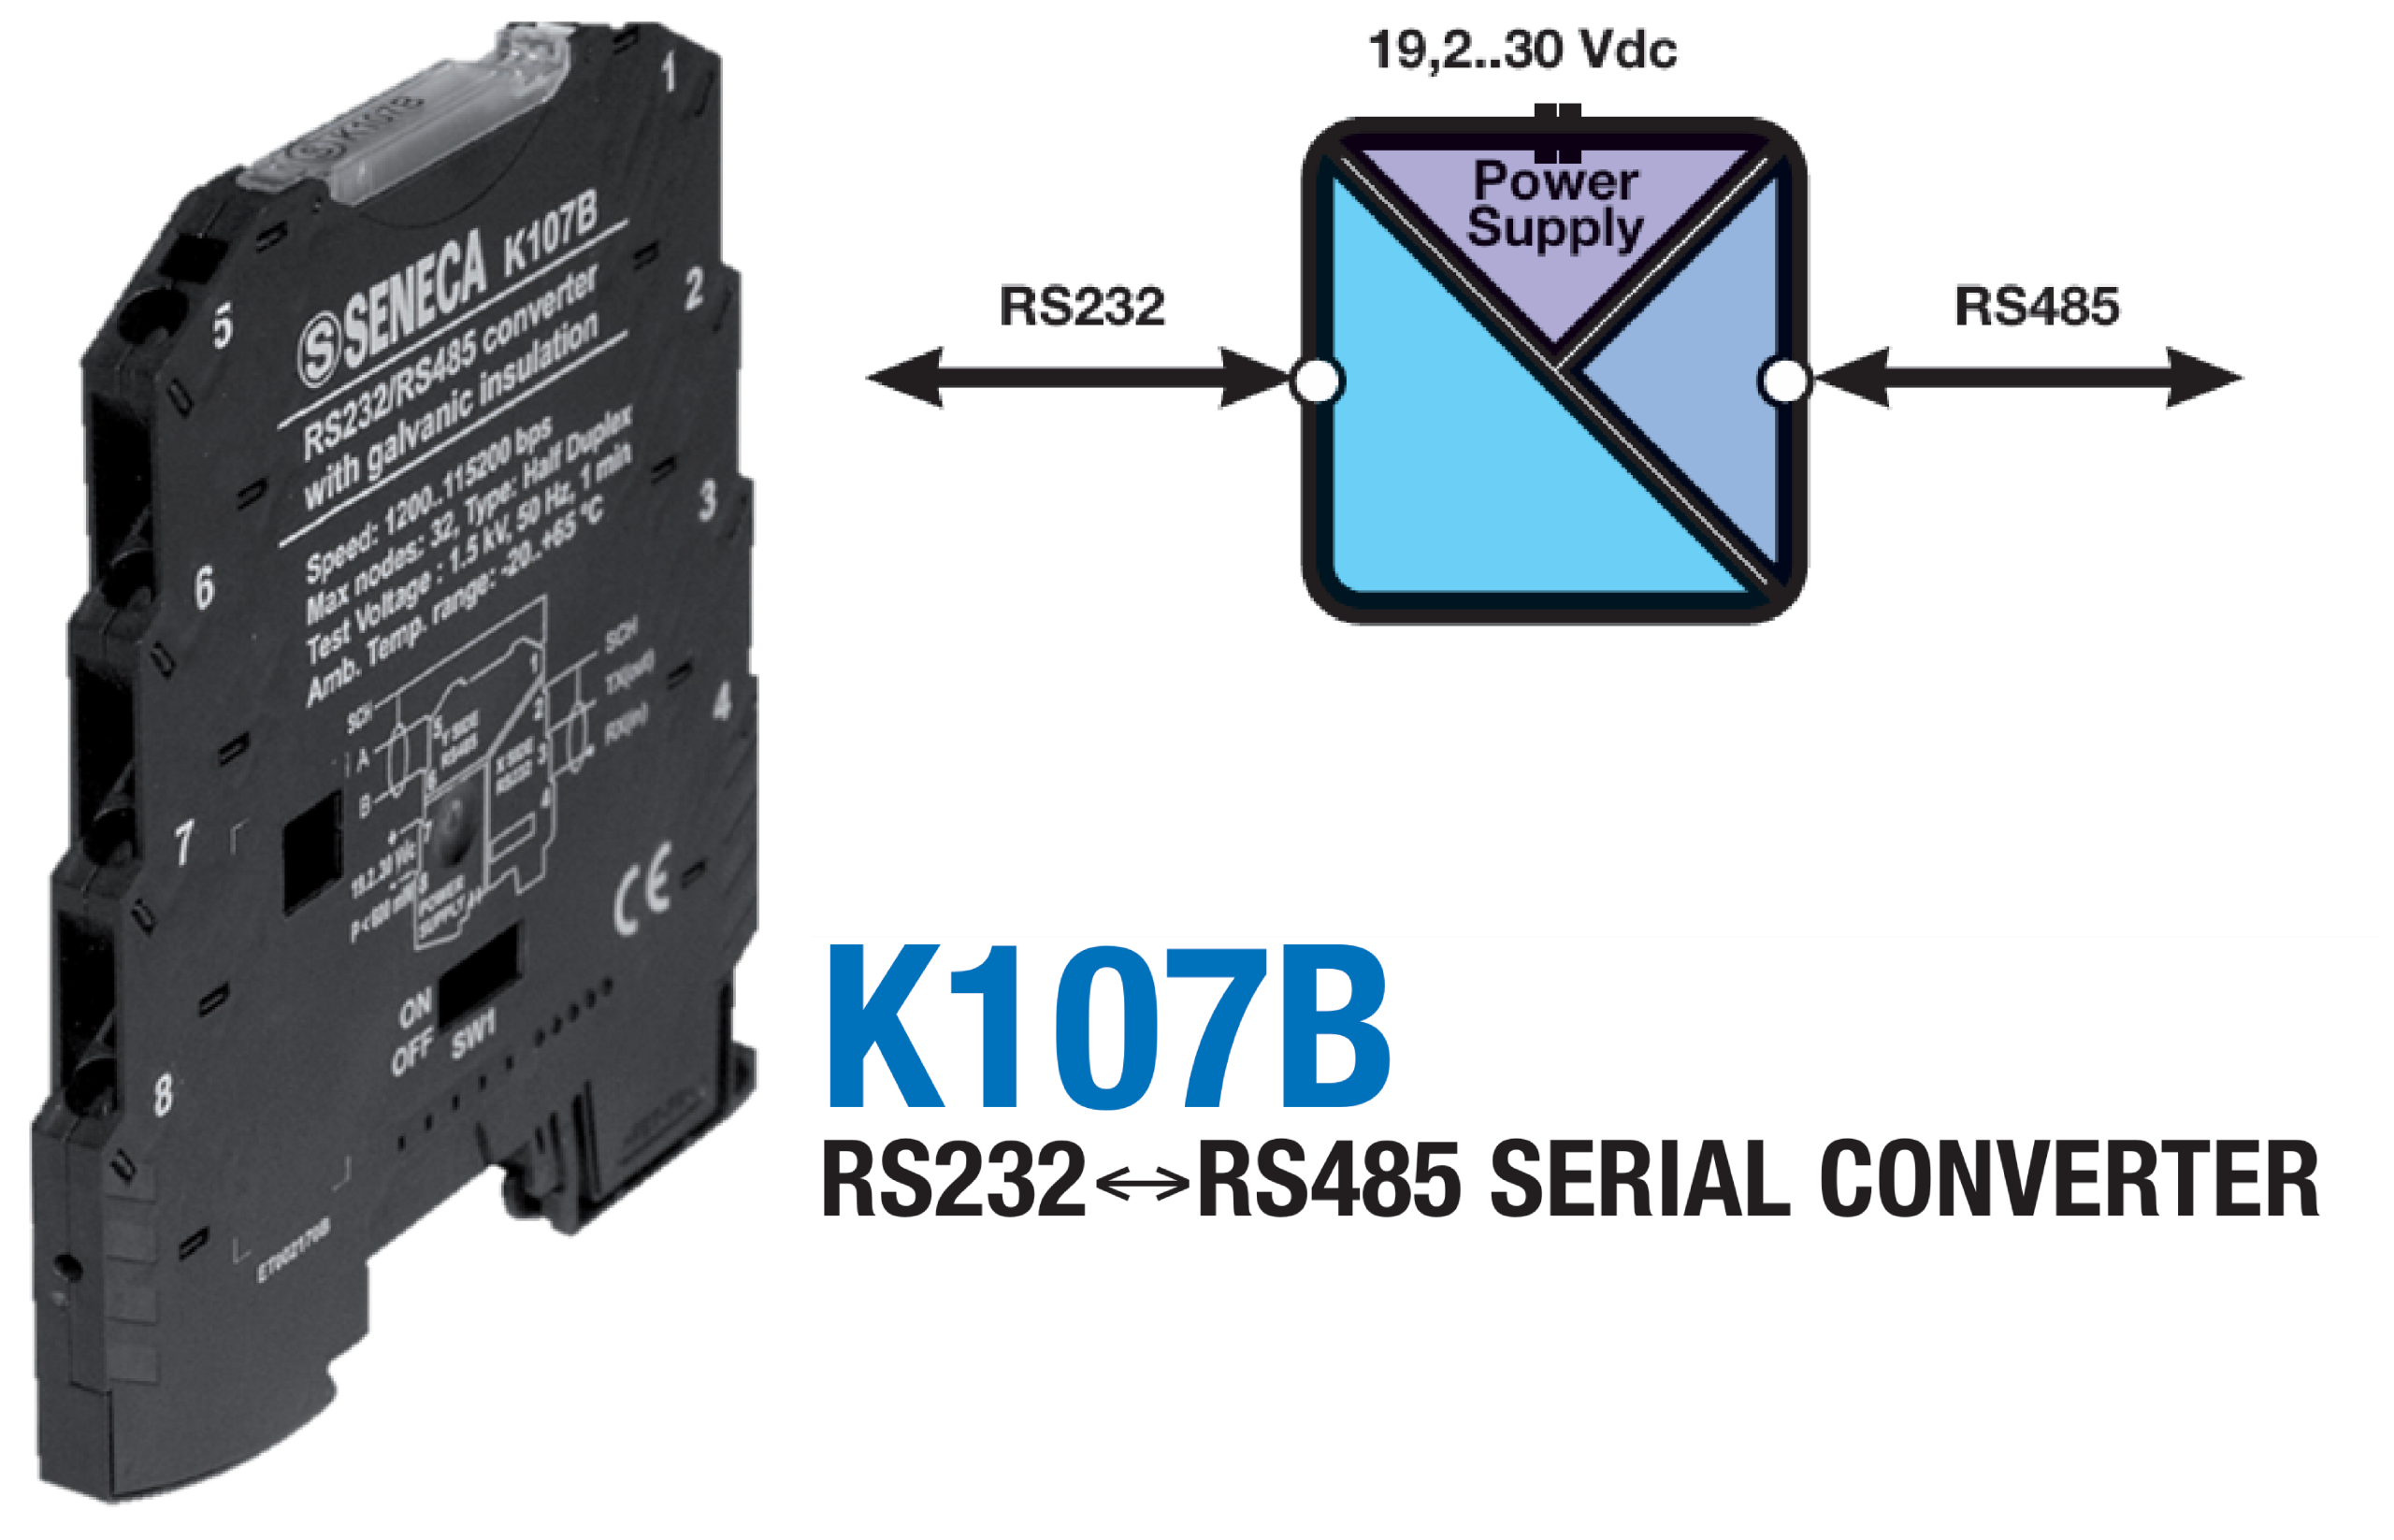 Thiết kế của Bộ chuyển đổi RS232 sang RS485